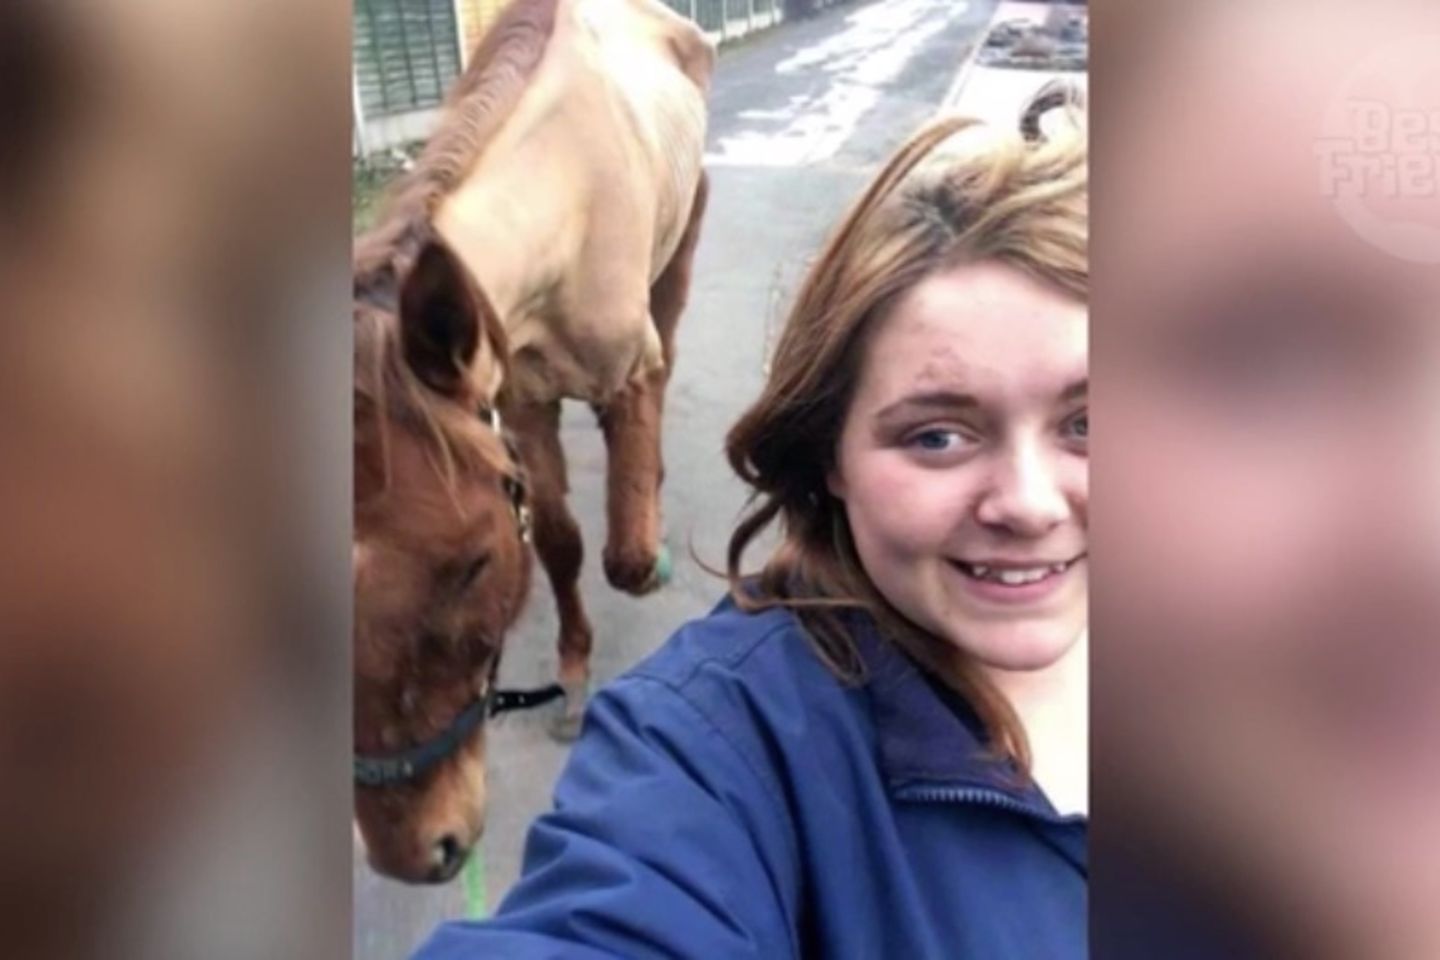 Skandal Selfie Bei Diesem Pferde Foto Kannte Das Gericht Keine Gnade Brigitte De